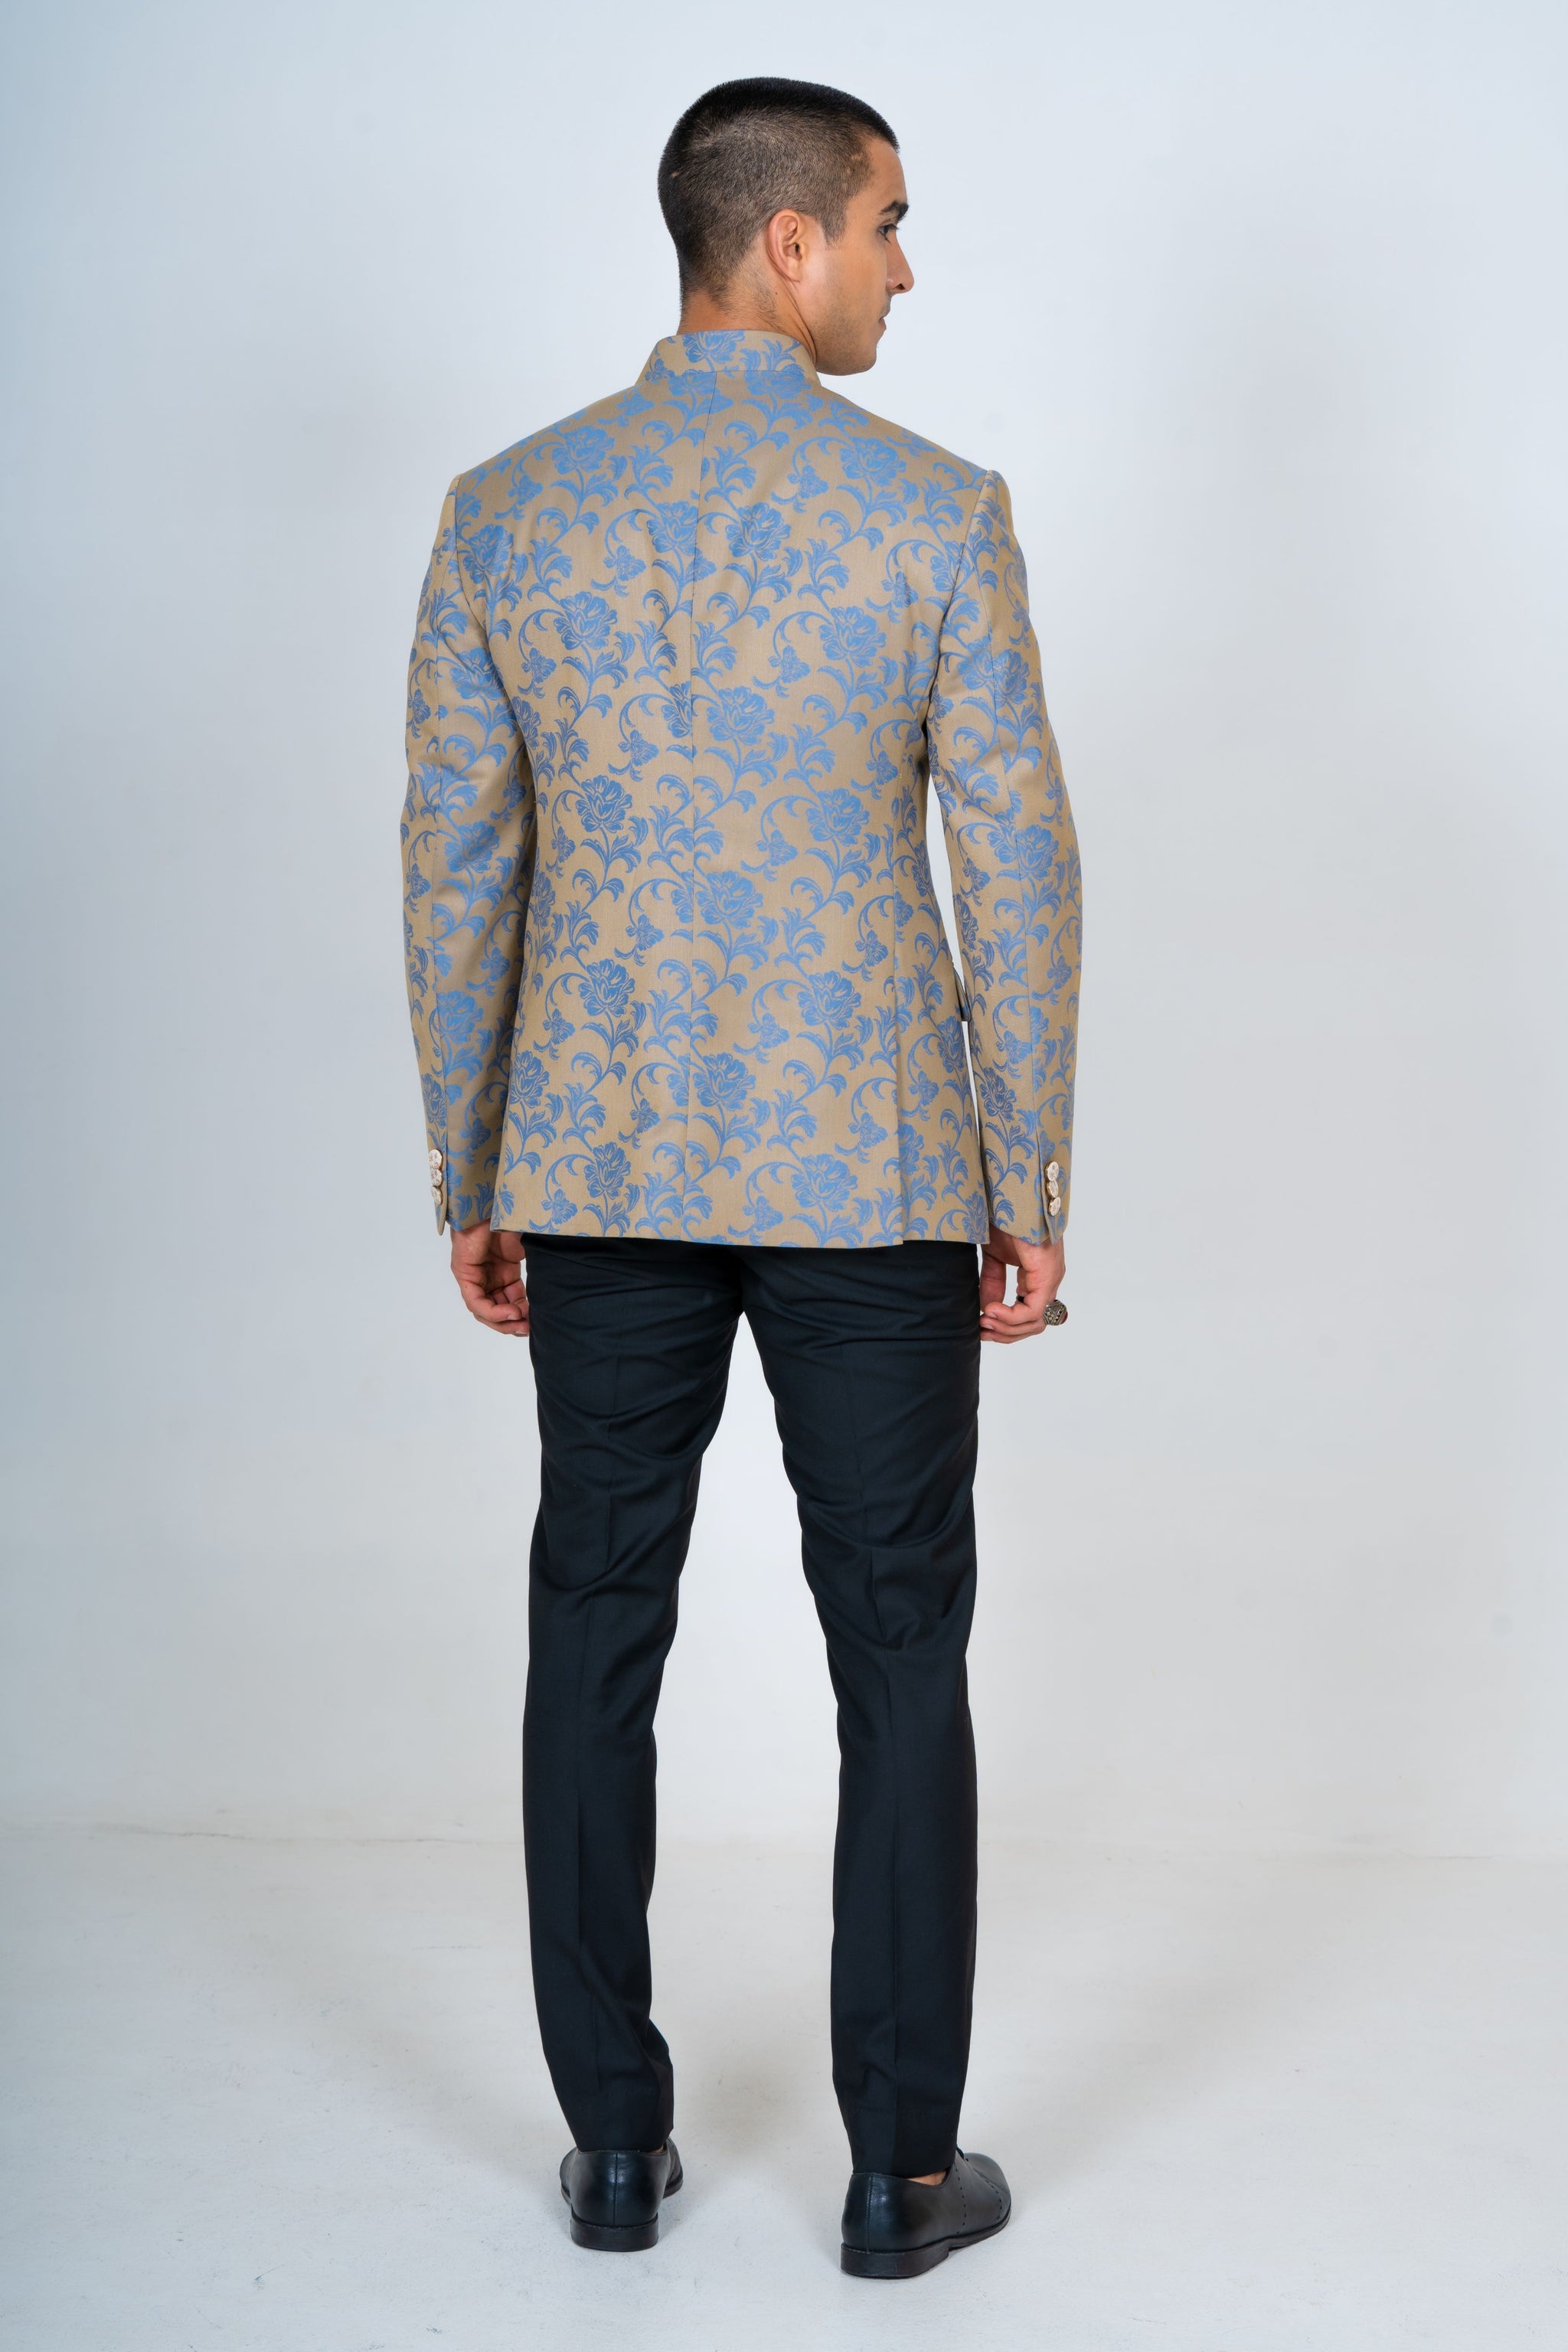 Jacquard Bandhgala Top Suit